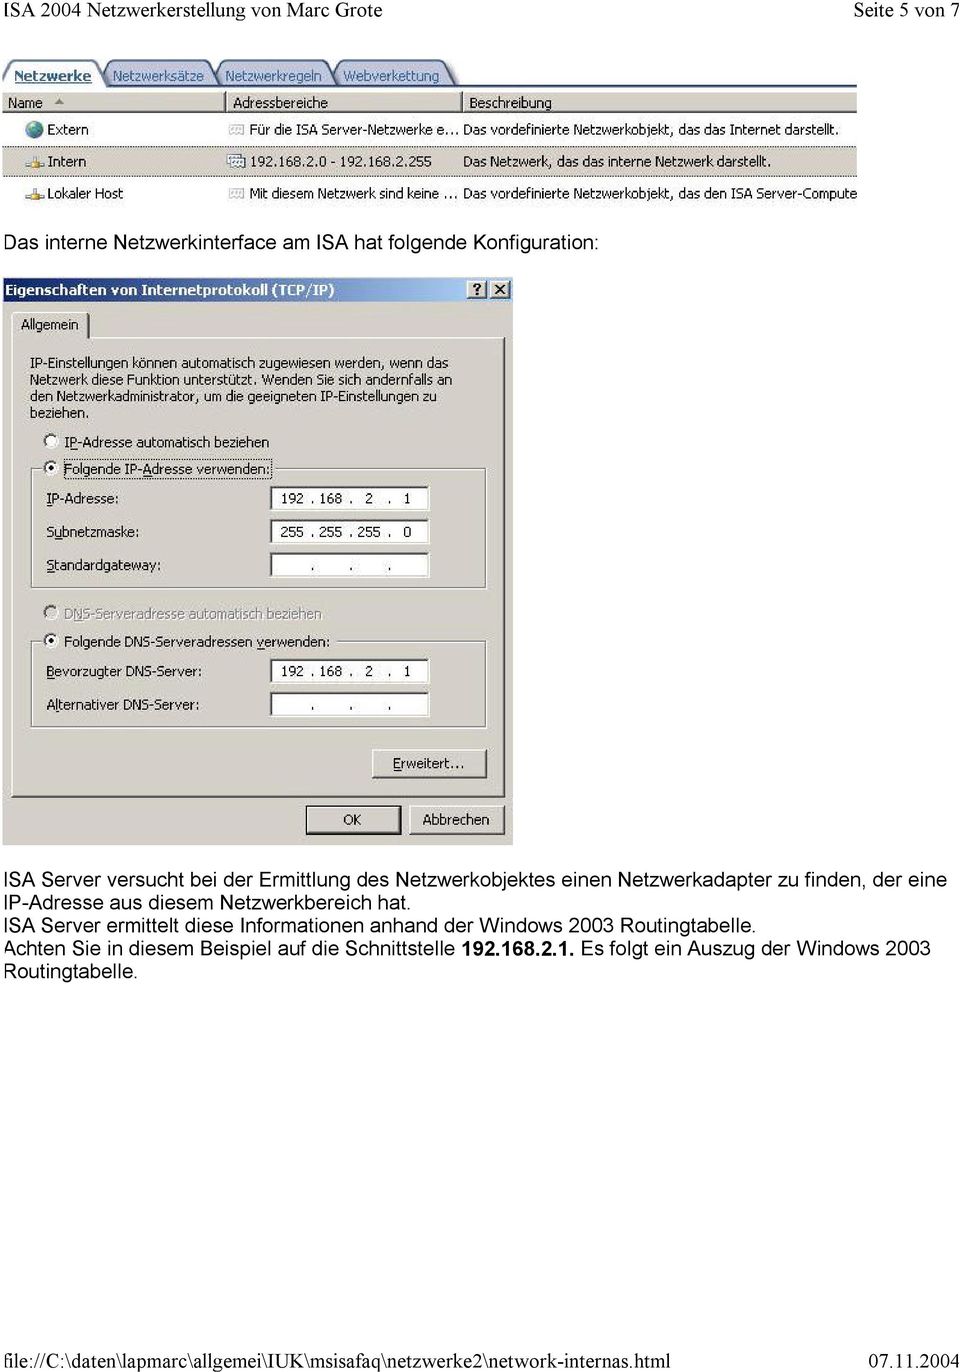 Netzwerkbereich hat. ISA Server ermittelt diese Informationen anhand der Windows 2003 Routingtabelle.